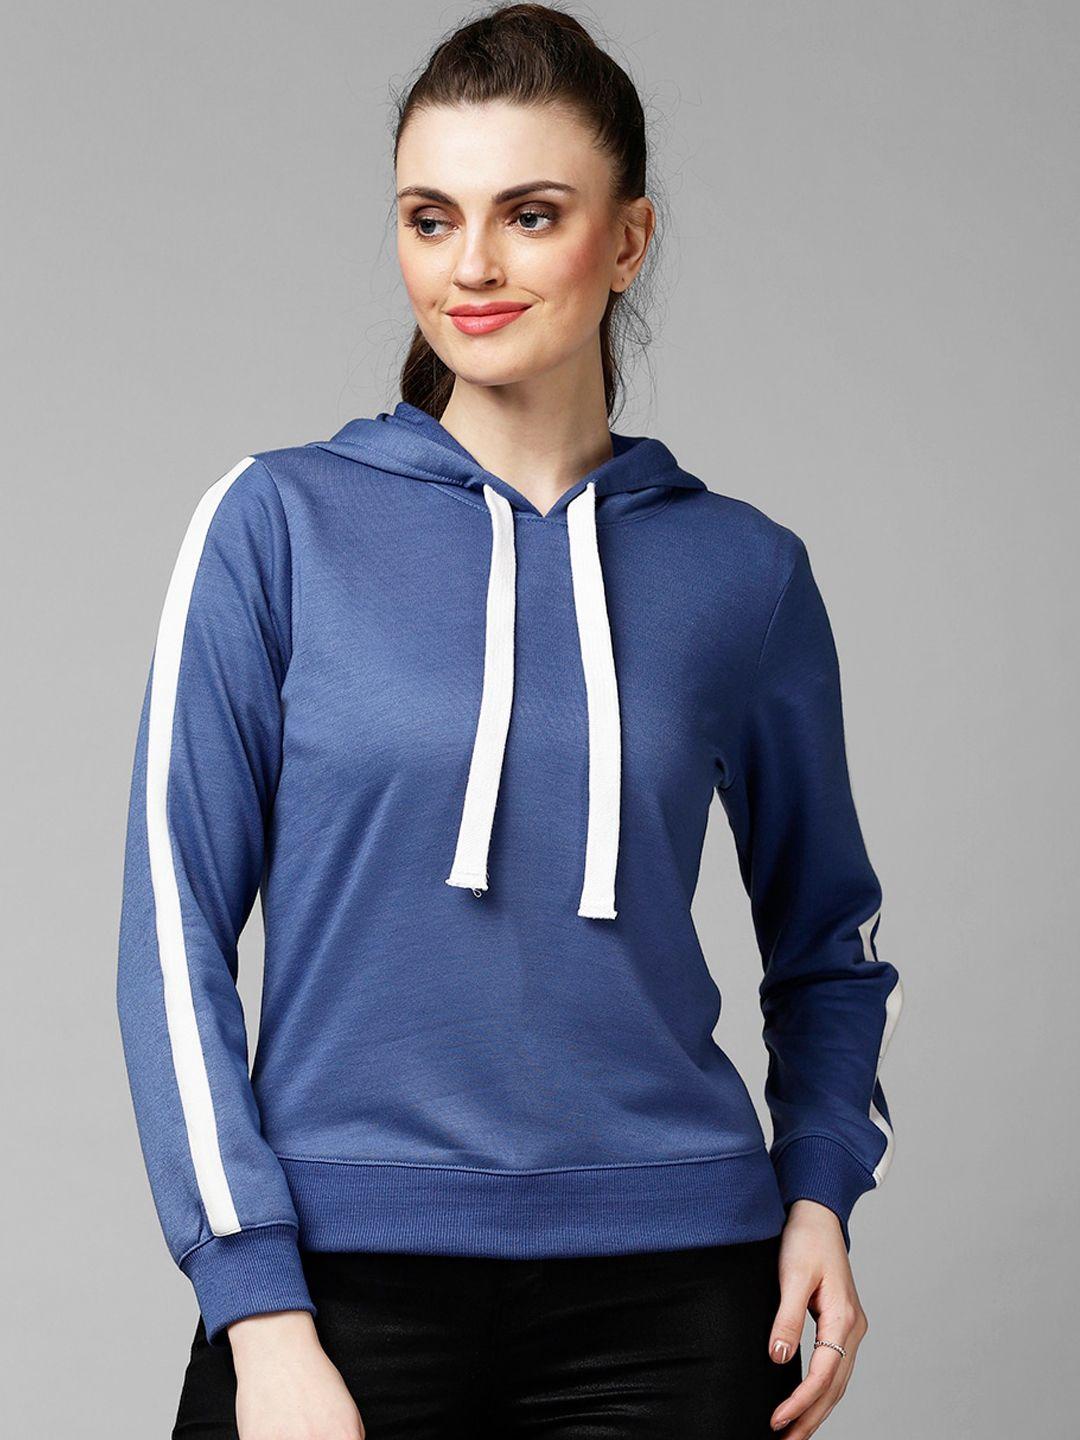 kassually-women-blue-solid-sweatshirt